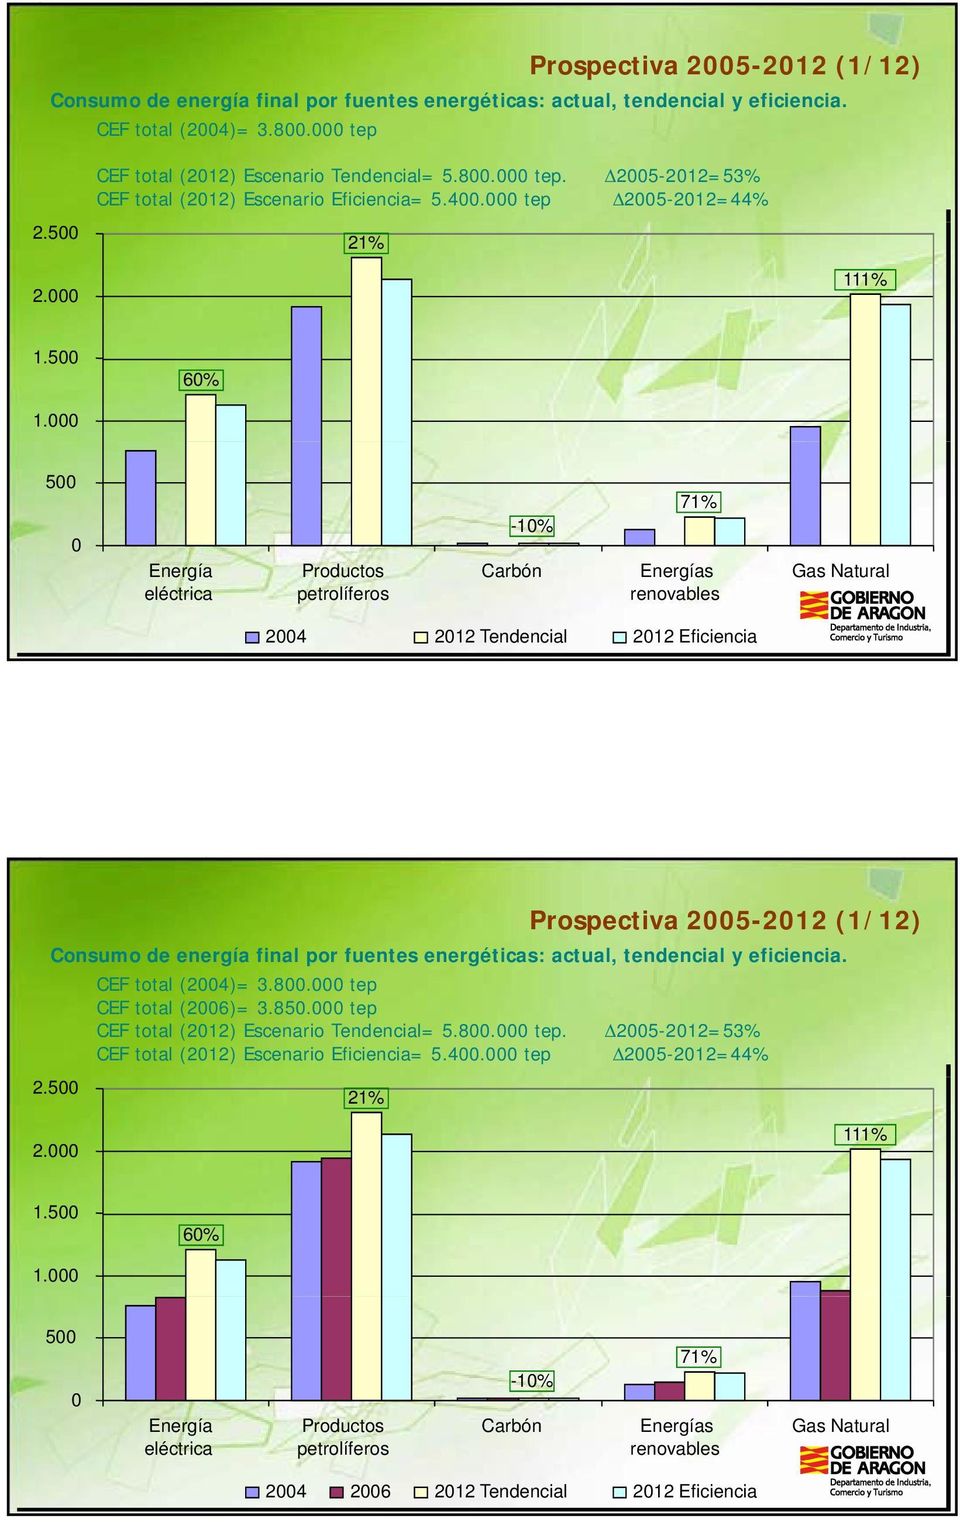 000 500 0 Energía eléctrica Productos petrolíferos -10% Carbón 71% Energías renovables Gas Natural 2004 2012 Tendencial 2012 Eficiencia CEF total (2004)= 3.800.000 tep CEF total (2006)= 3.850.